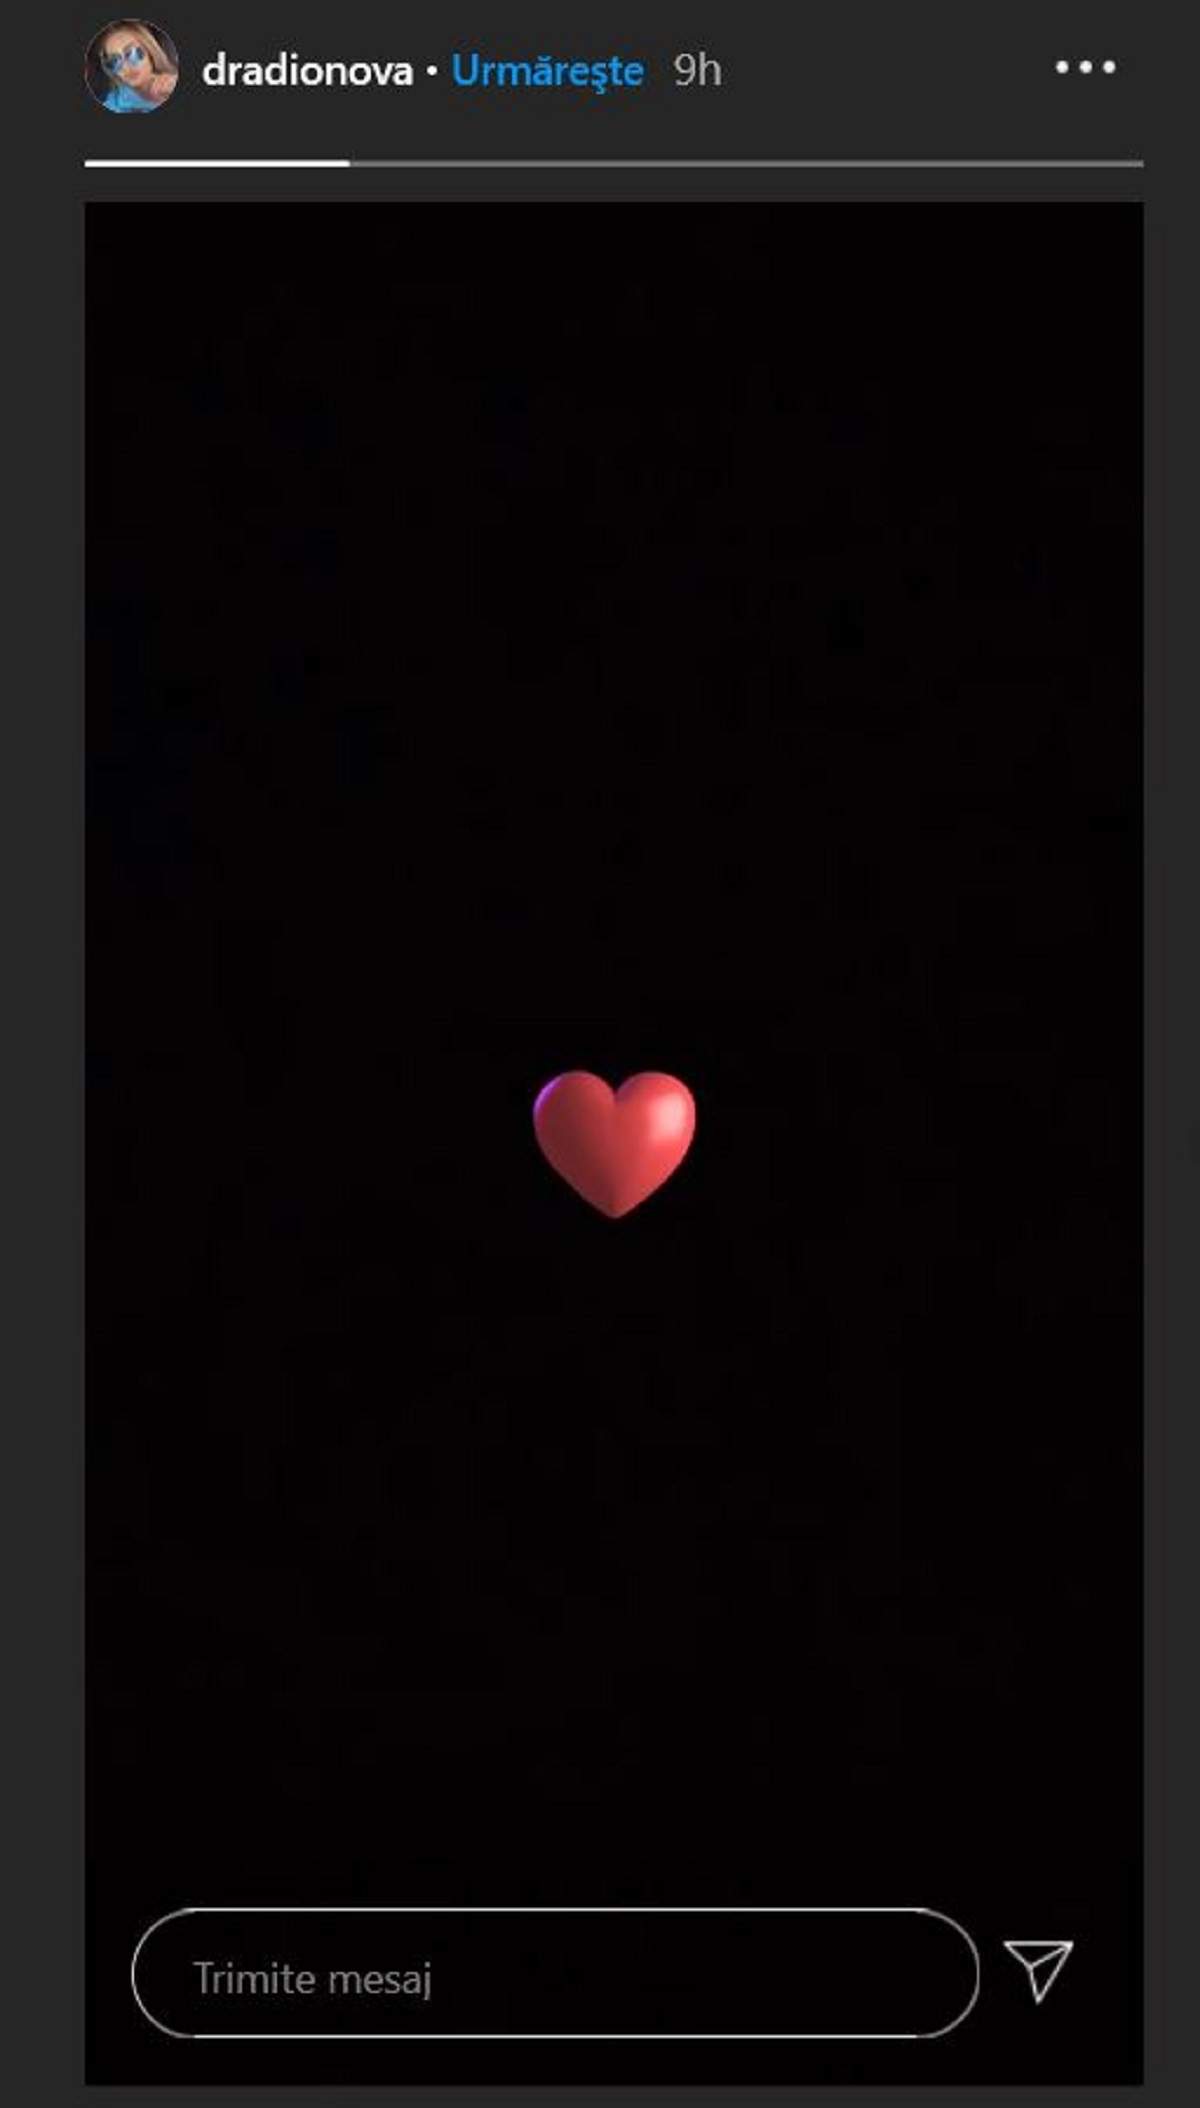 Daria a postat o inimă pe un fundal negru pe Instagram.